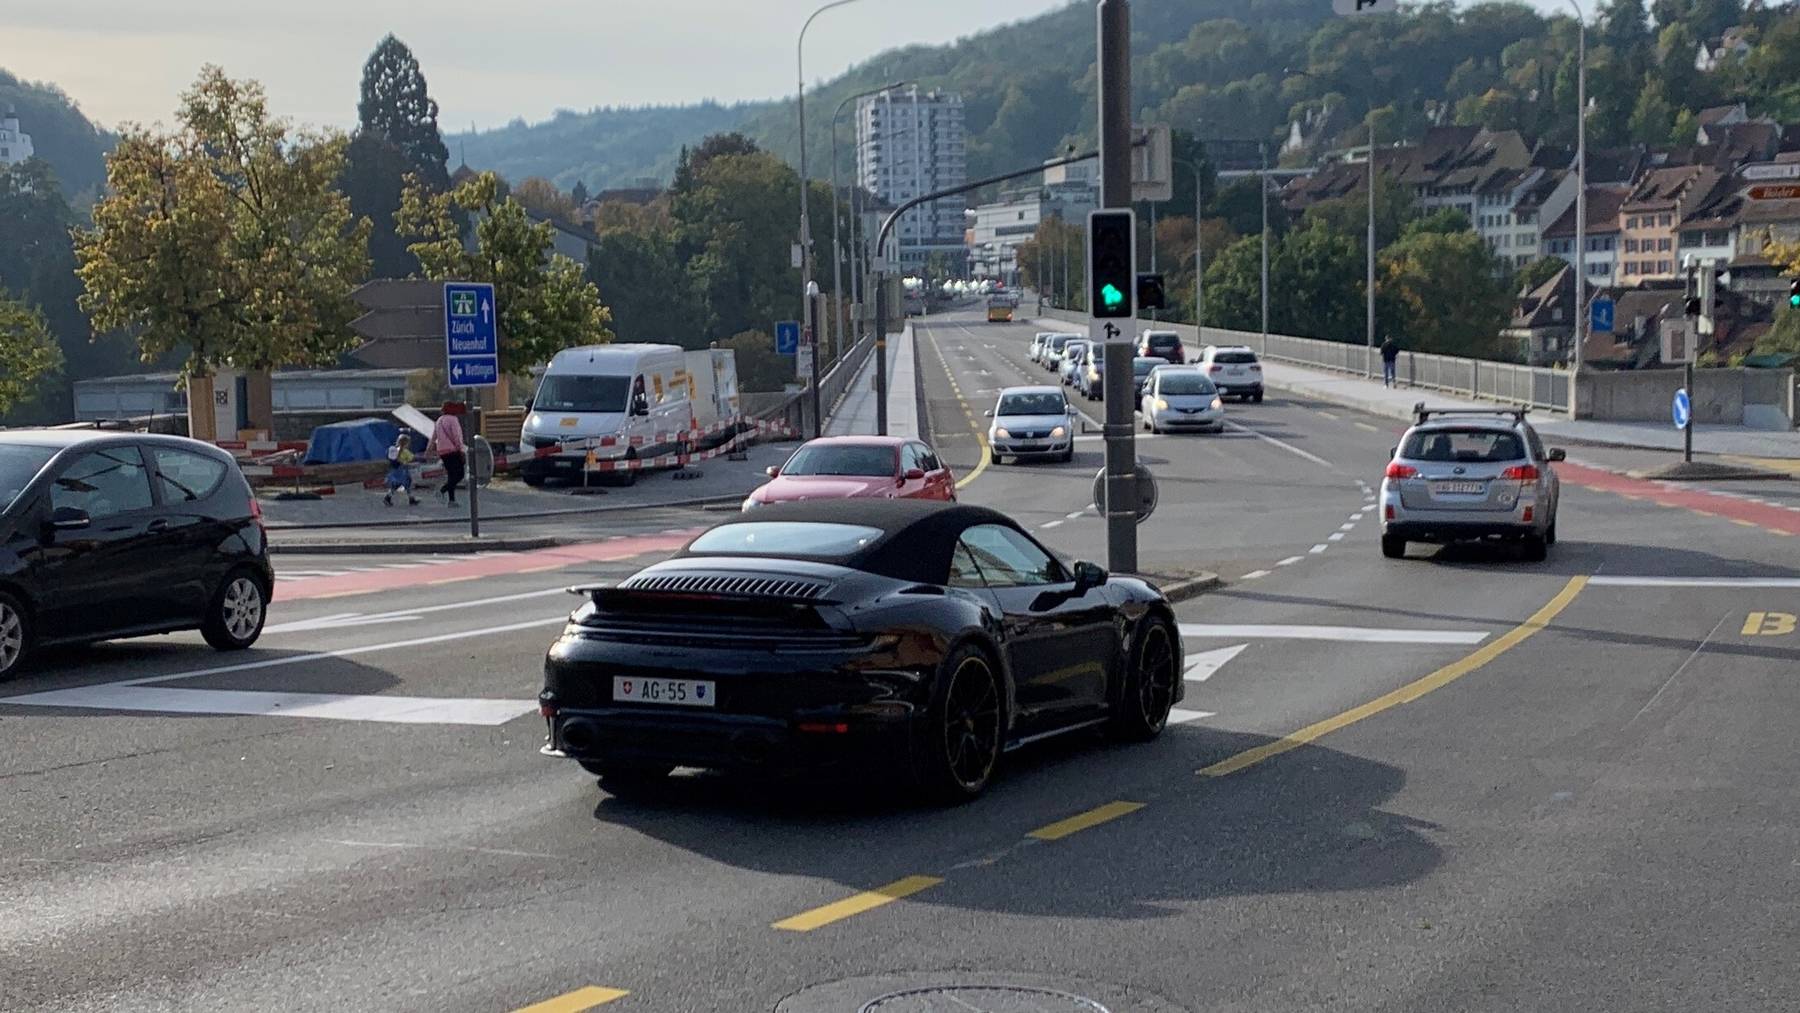 Gesichtet: Die teuerste Aargauer Autonummer - AG 55 - an einem schwarzen Porsche!